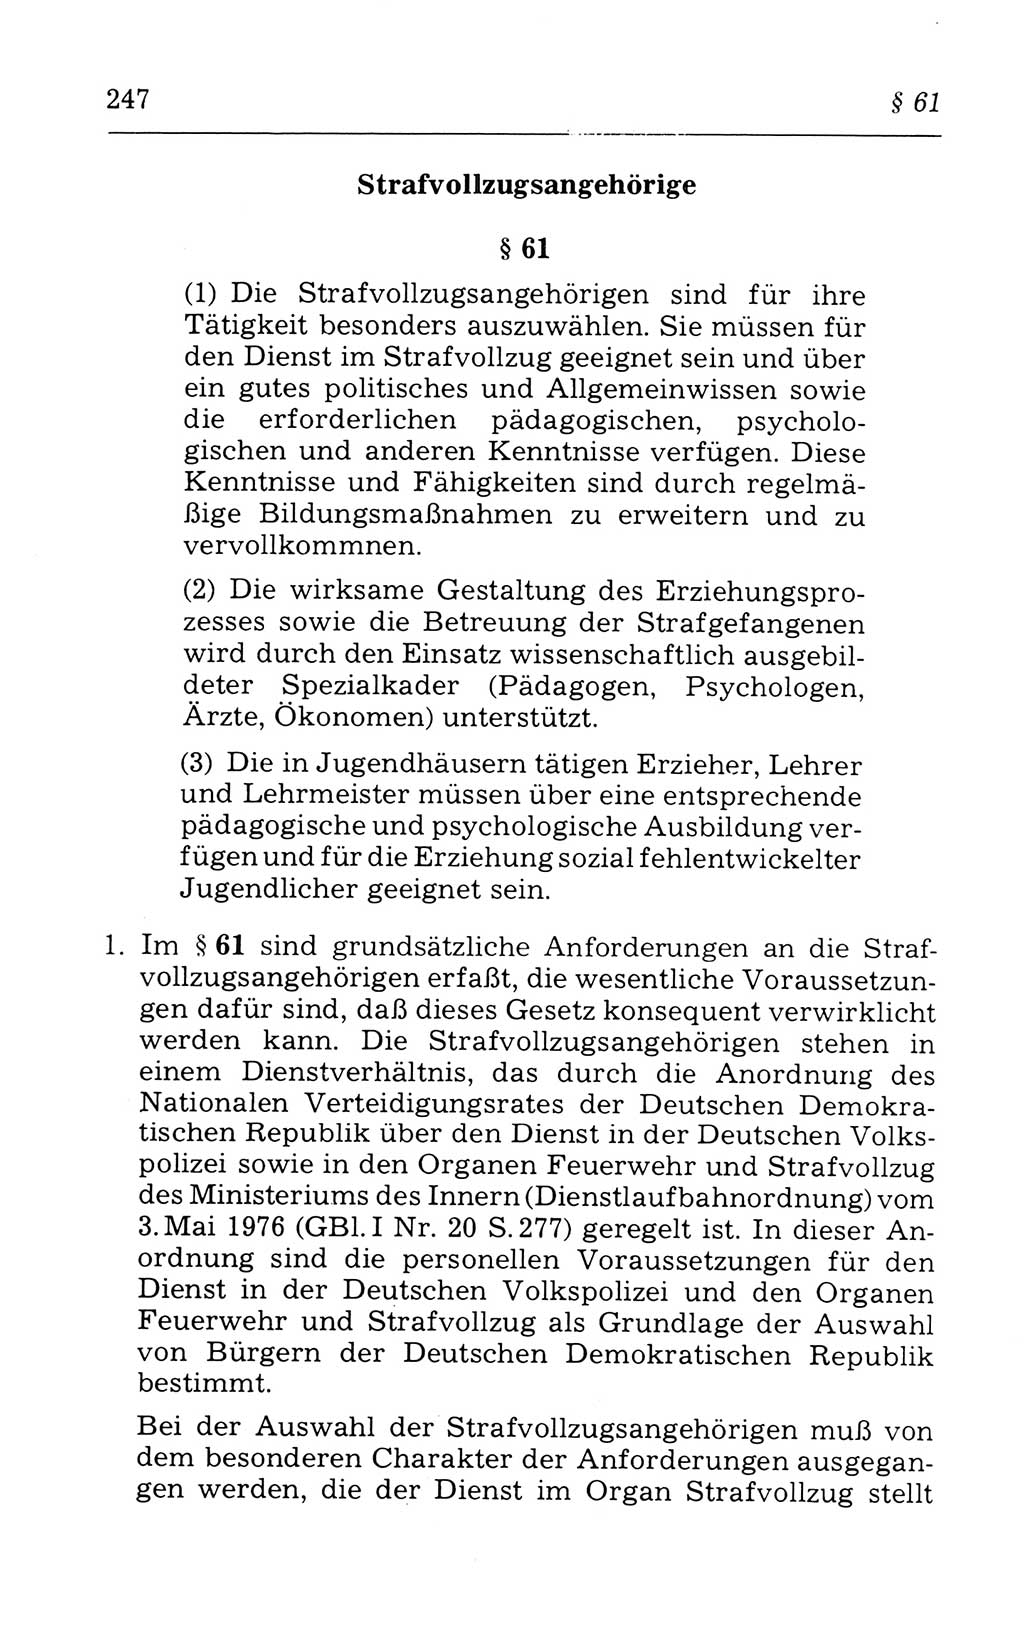 Kommentar zum Strafvollzugsgesetz [(StVG) Deutsche Demokratische Republik (DDR)] 1980, Seite 247 (Komm. StVG DDR 1980, S. 247)